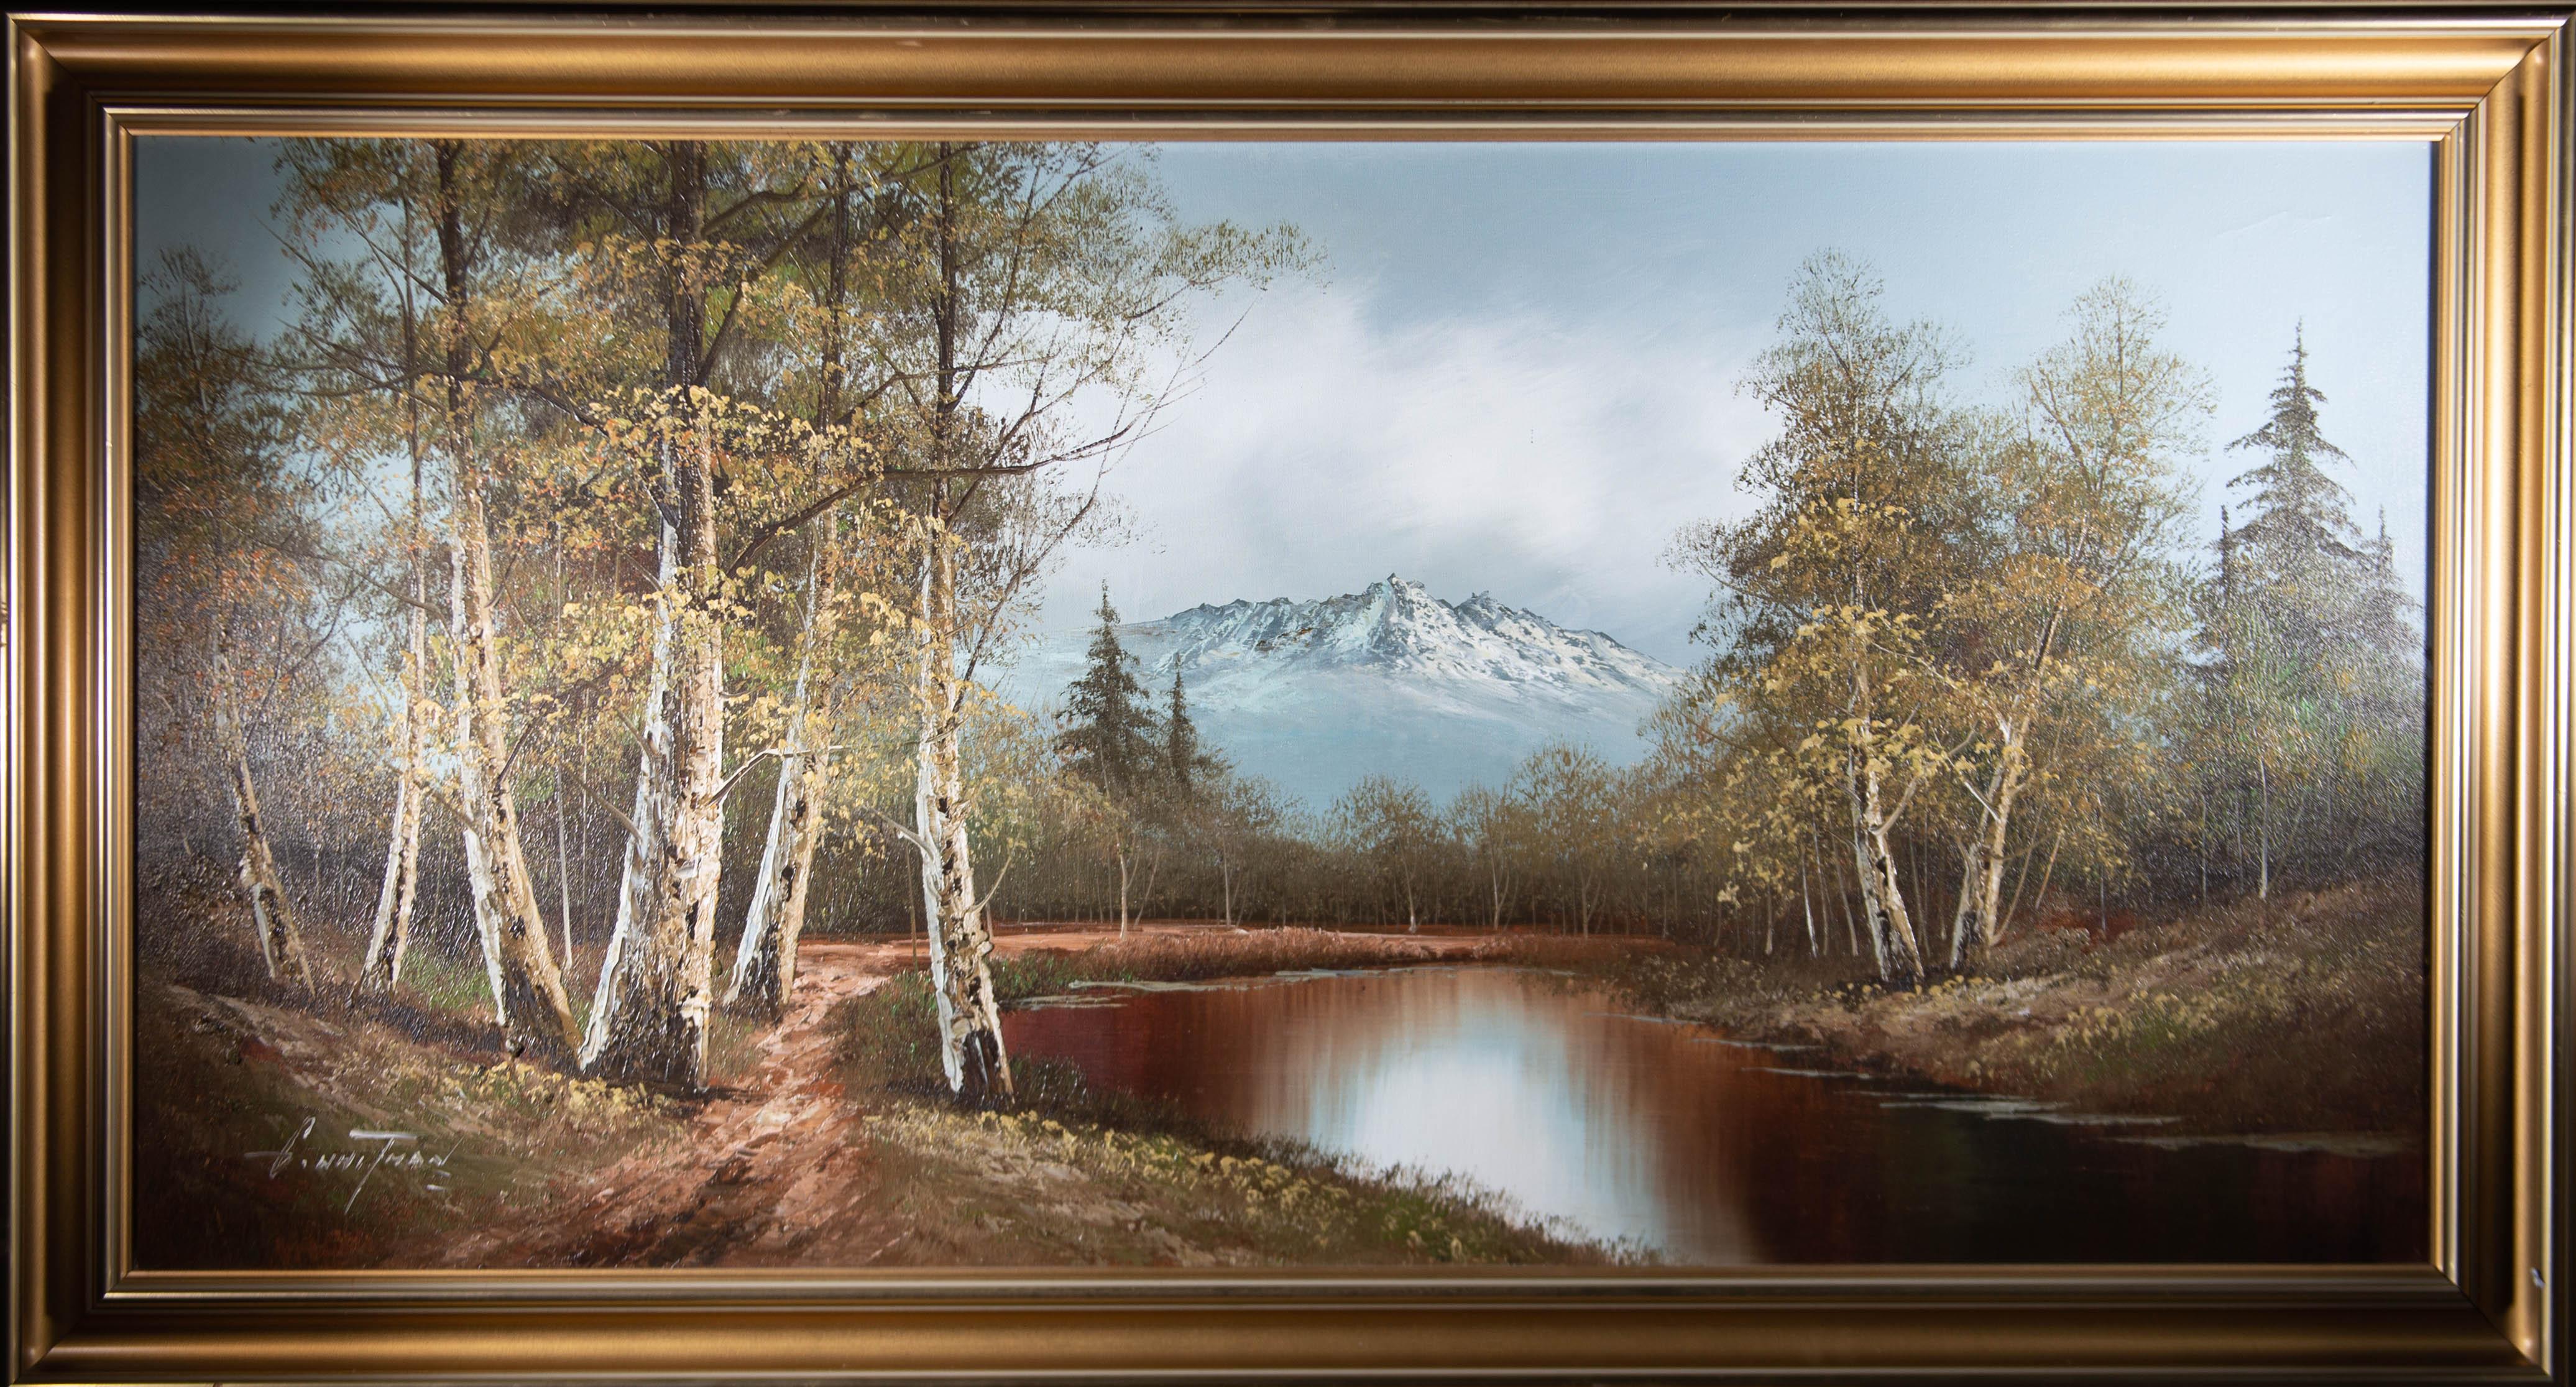 Une scène pittoresque de lac de montagne avec des dimensions panoramiques. L'artiste a signé dans le coin inférieur gauche et le tableau est présenté dans un cadre contemporain à effet doré. Sur toile.

